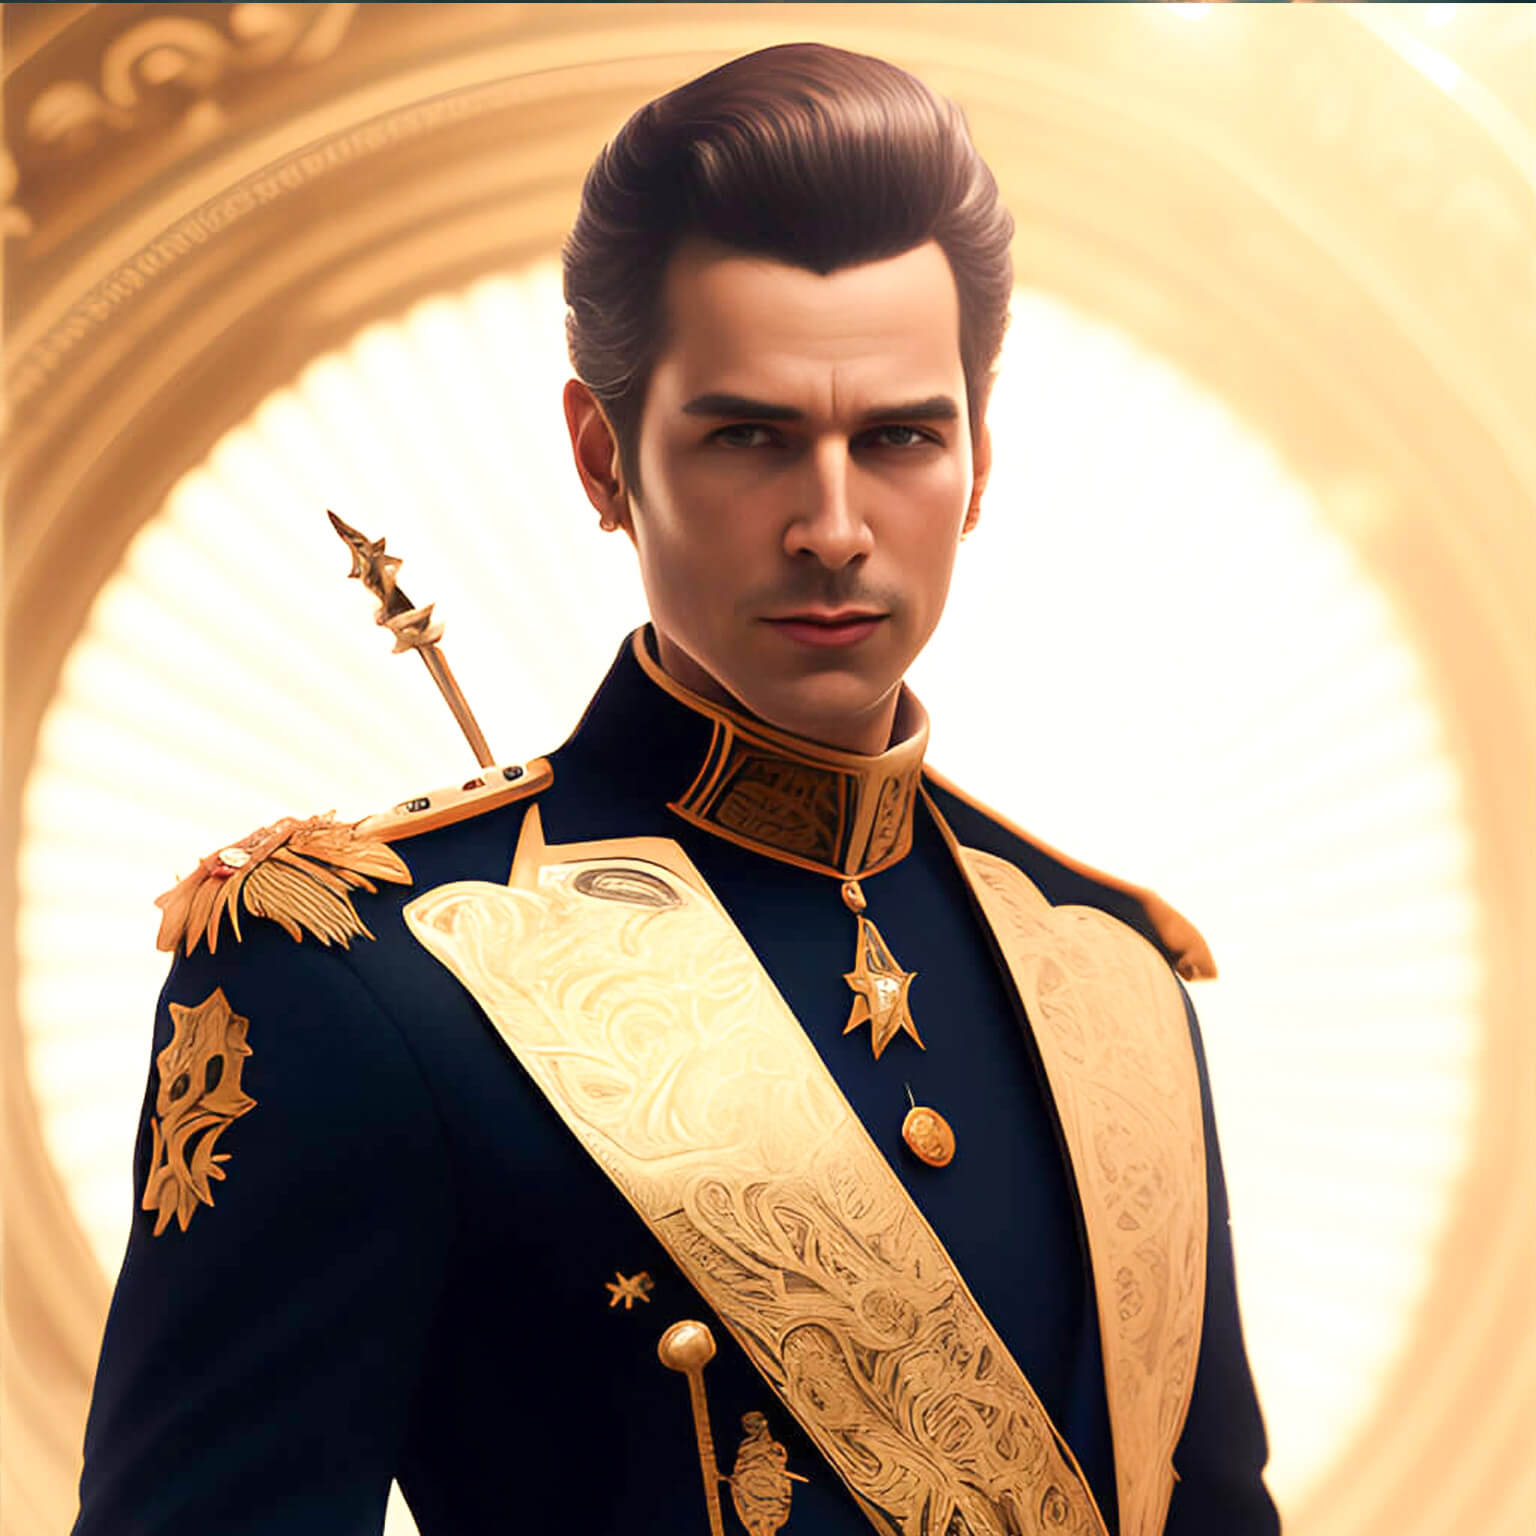 Ein KI Bild von einer einem Portrait von einem Prinzen mit goldener Scherpe